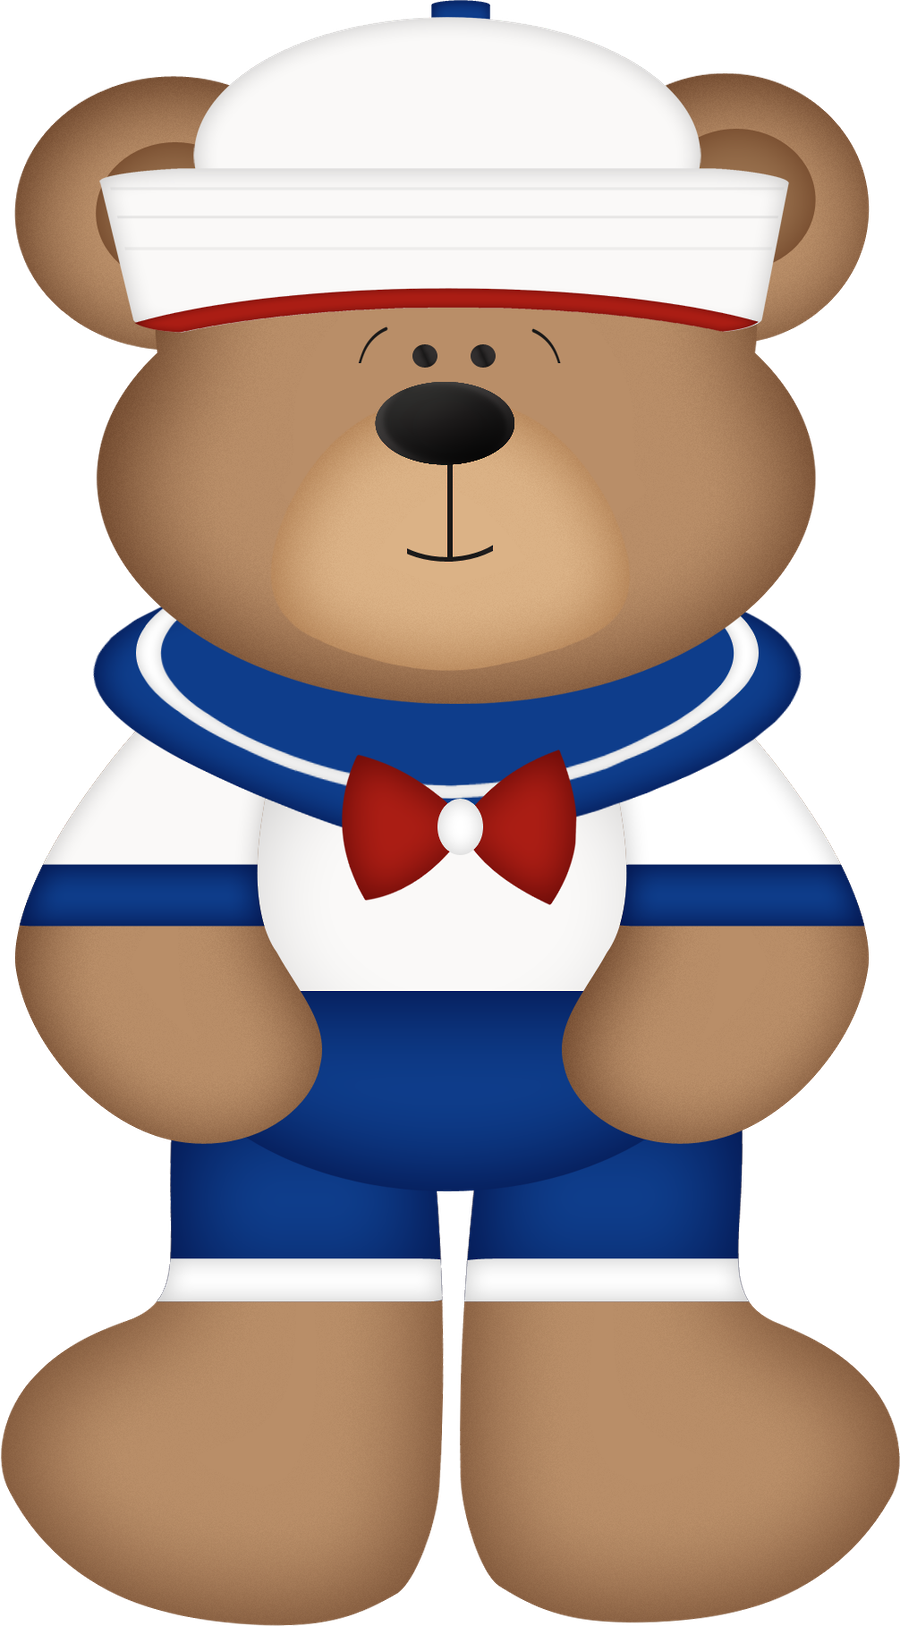 Bear In Sailors Out Fit - Osito Vestido De Marinero (900x1626)